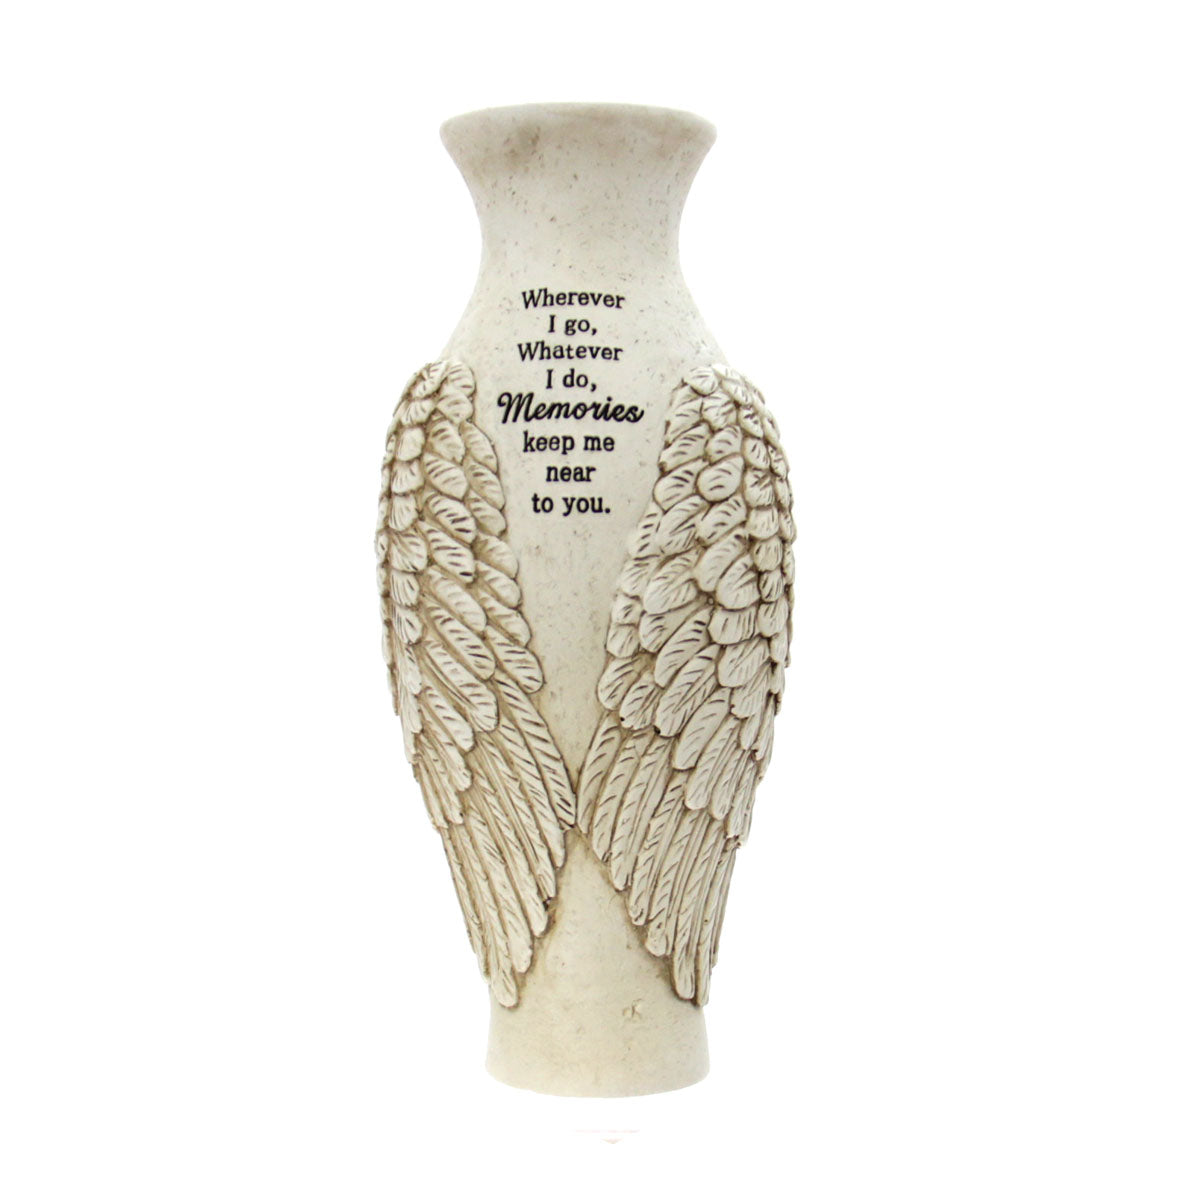 Memorial Vase "Wherever I go, Whatever I do, Memories keep me near you."